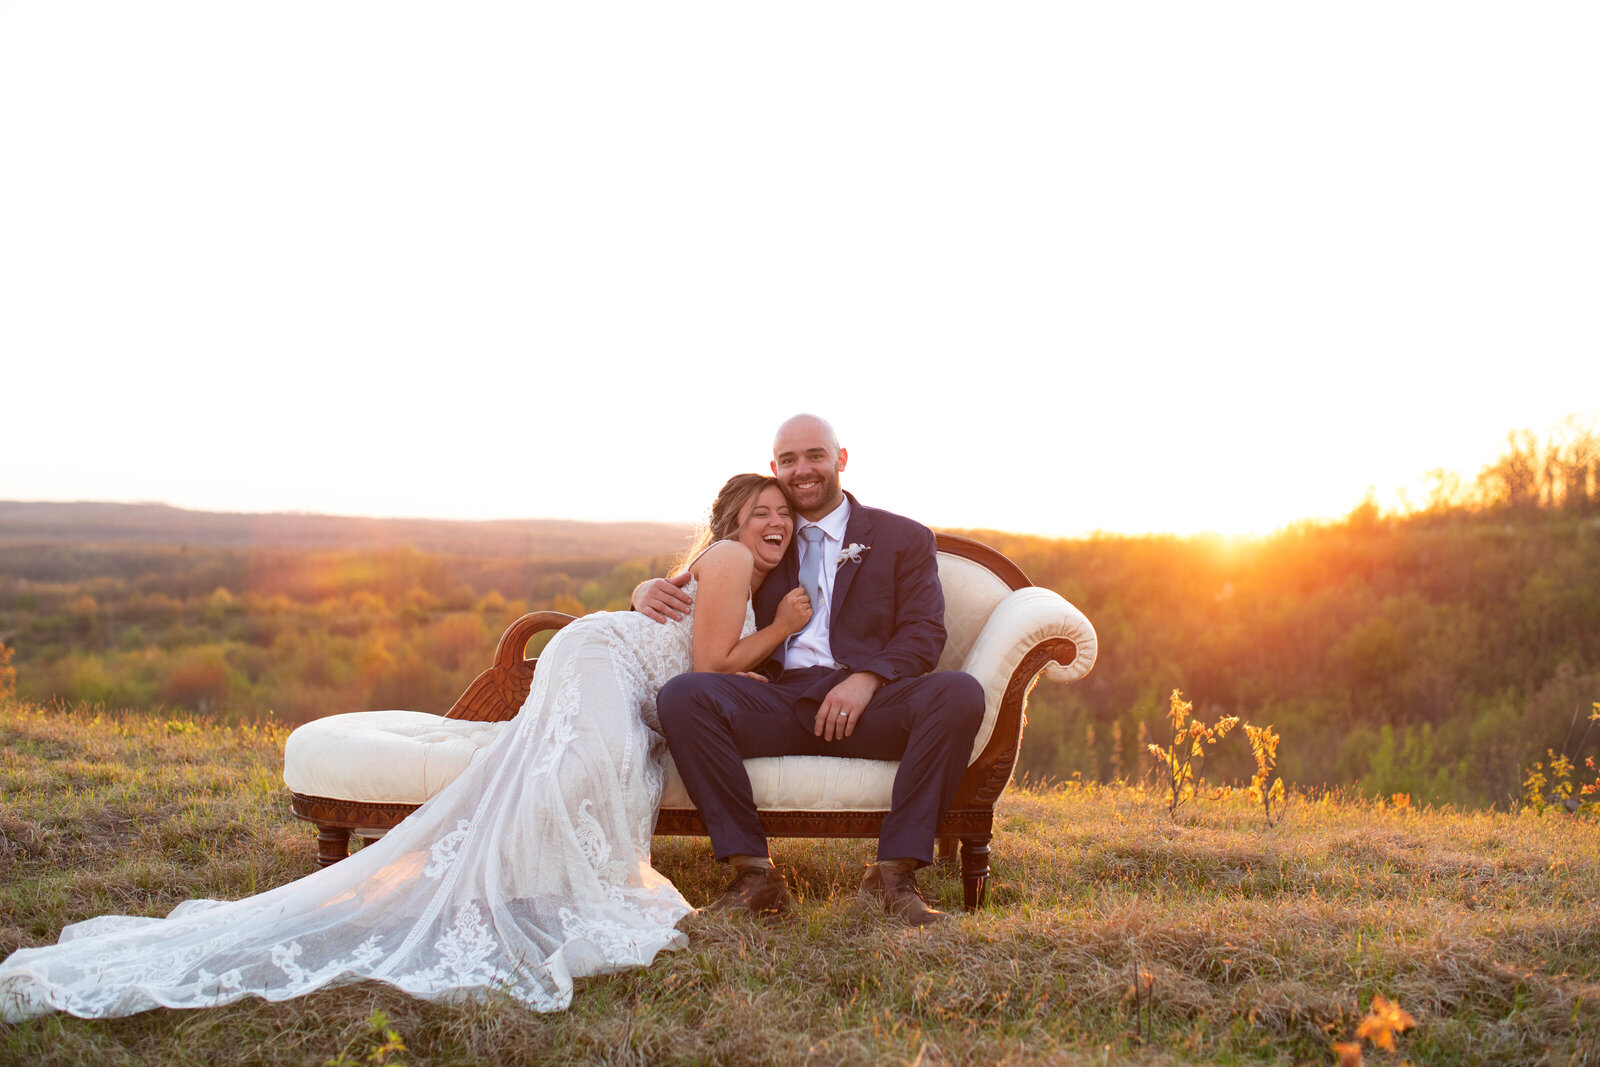 Kuffel Photography | Midwest Wedding Photographer | Wedding Portraits-63